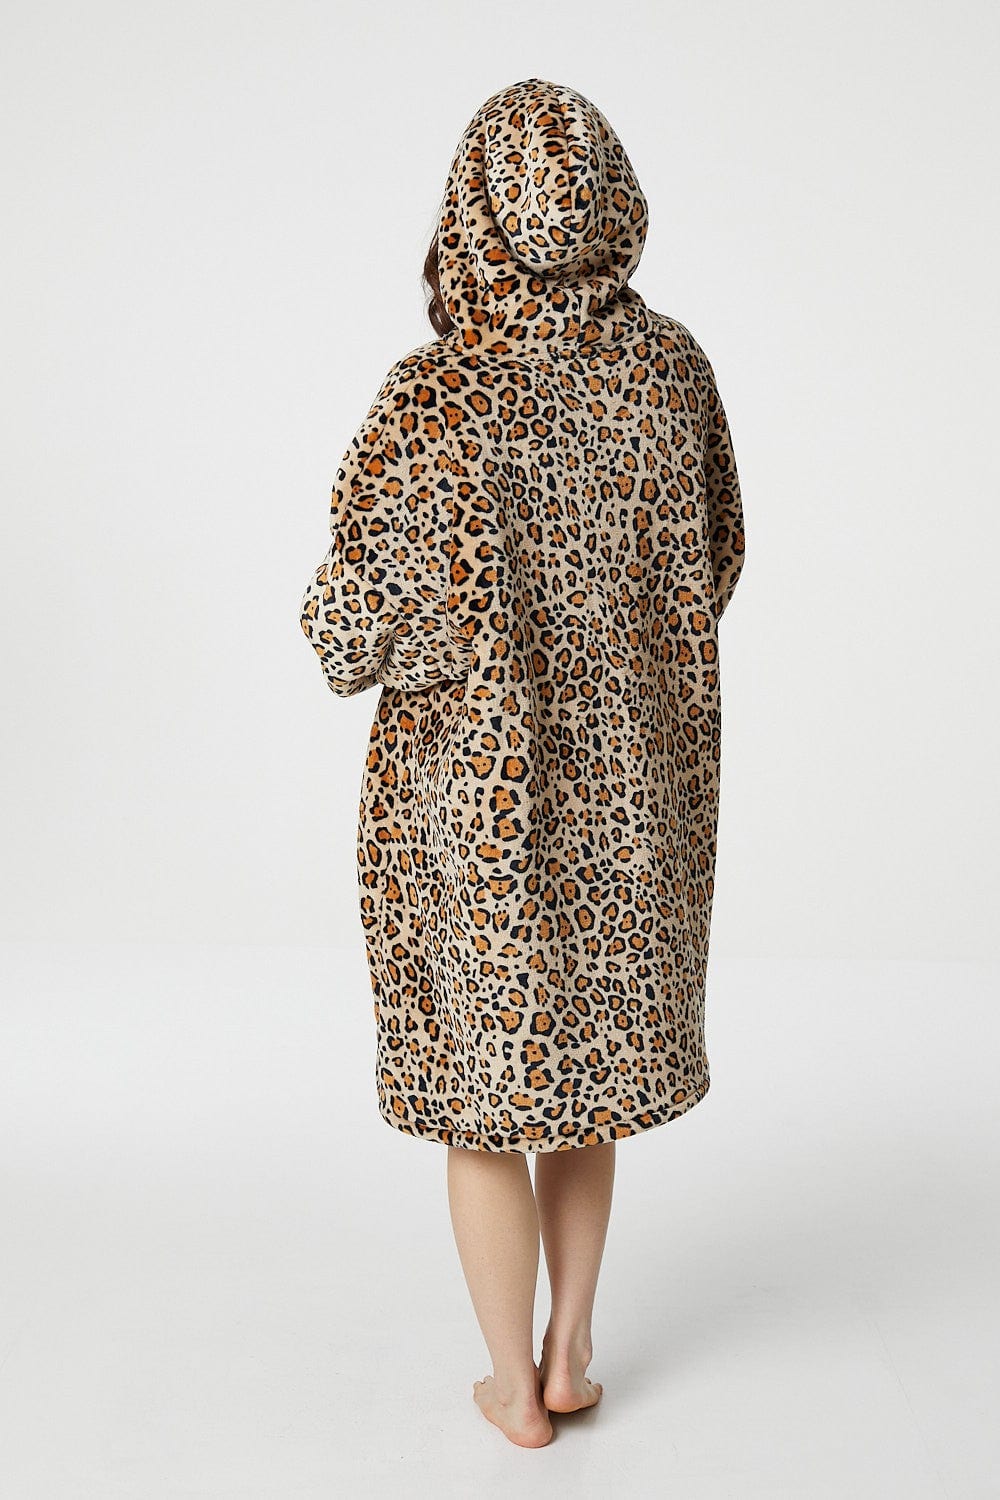 Beige | Leopard Print Snuggle Blanket Hoodie